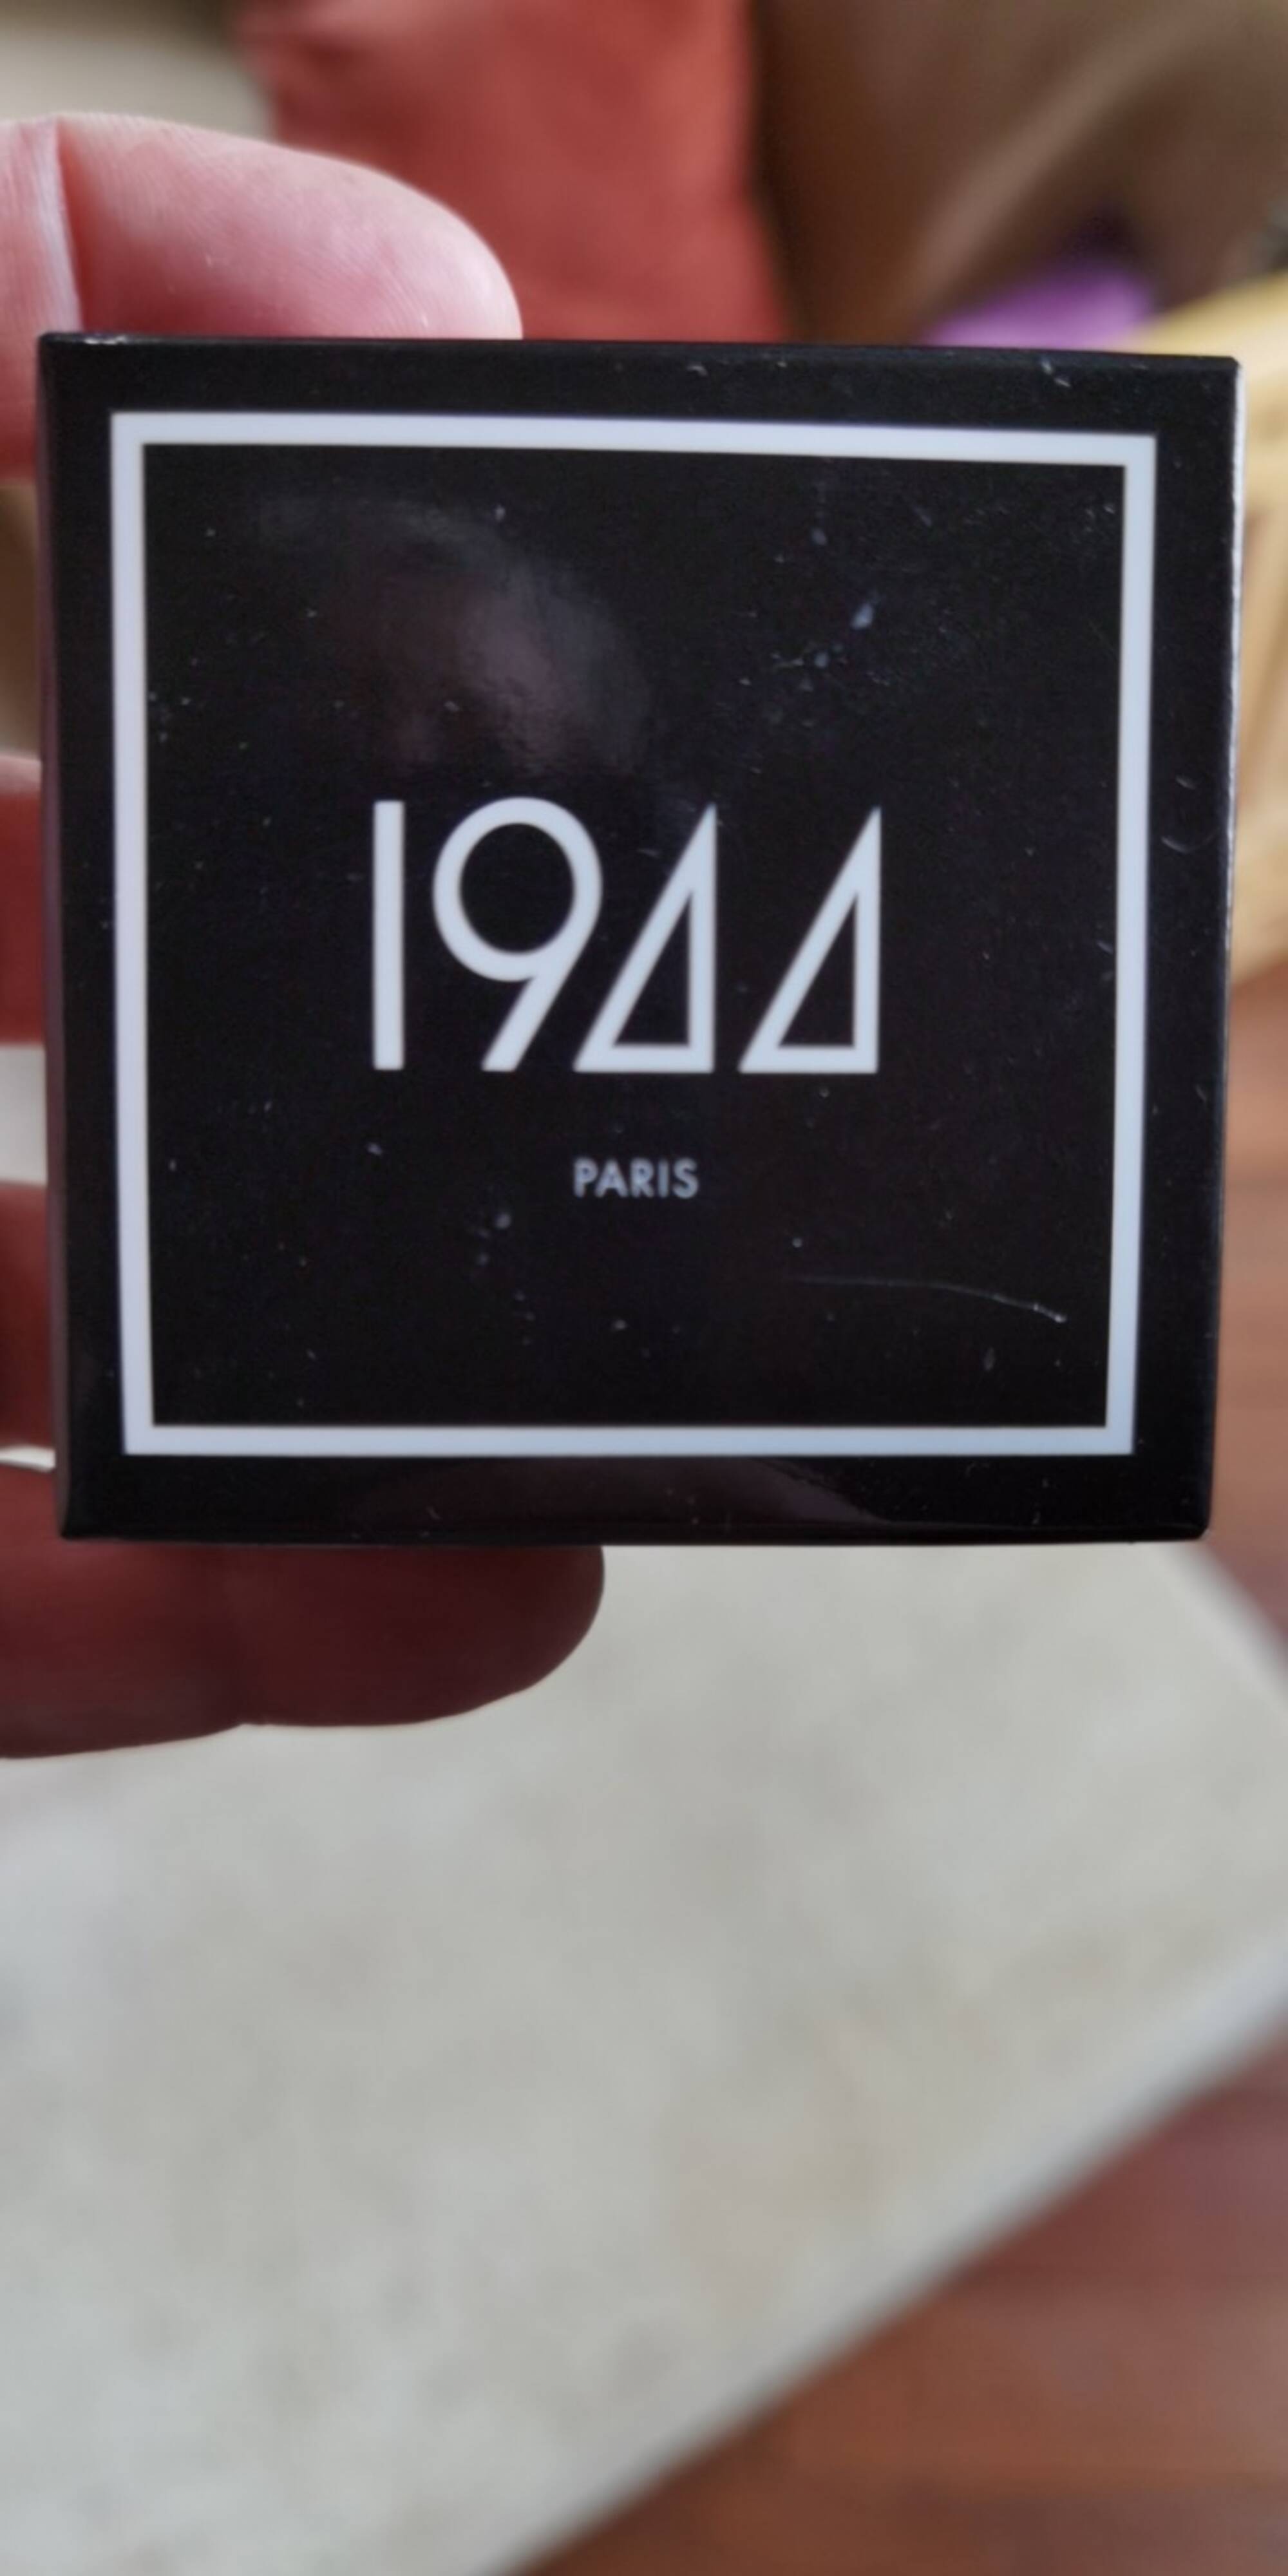 1944 PARIS - Fond de teint minéral beige moyen